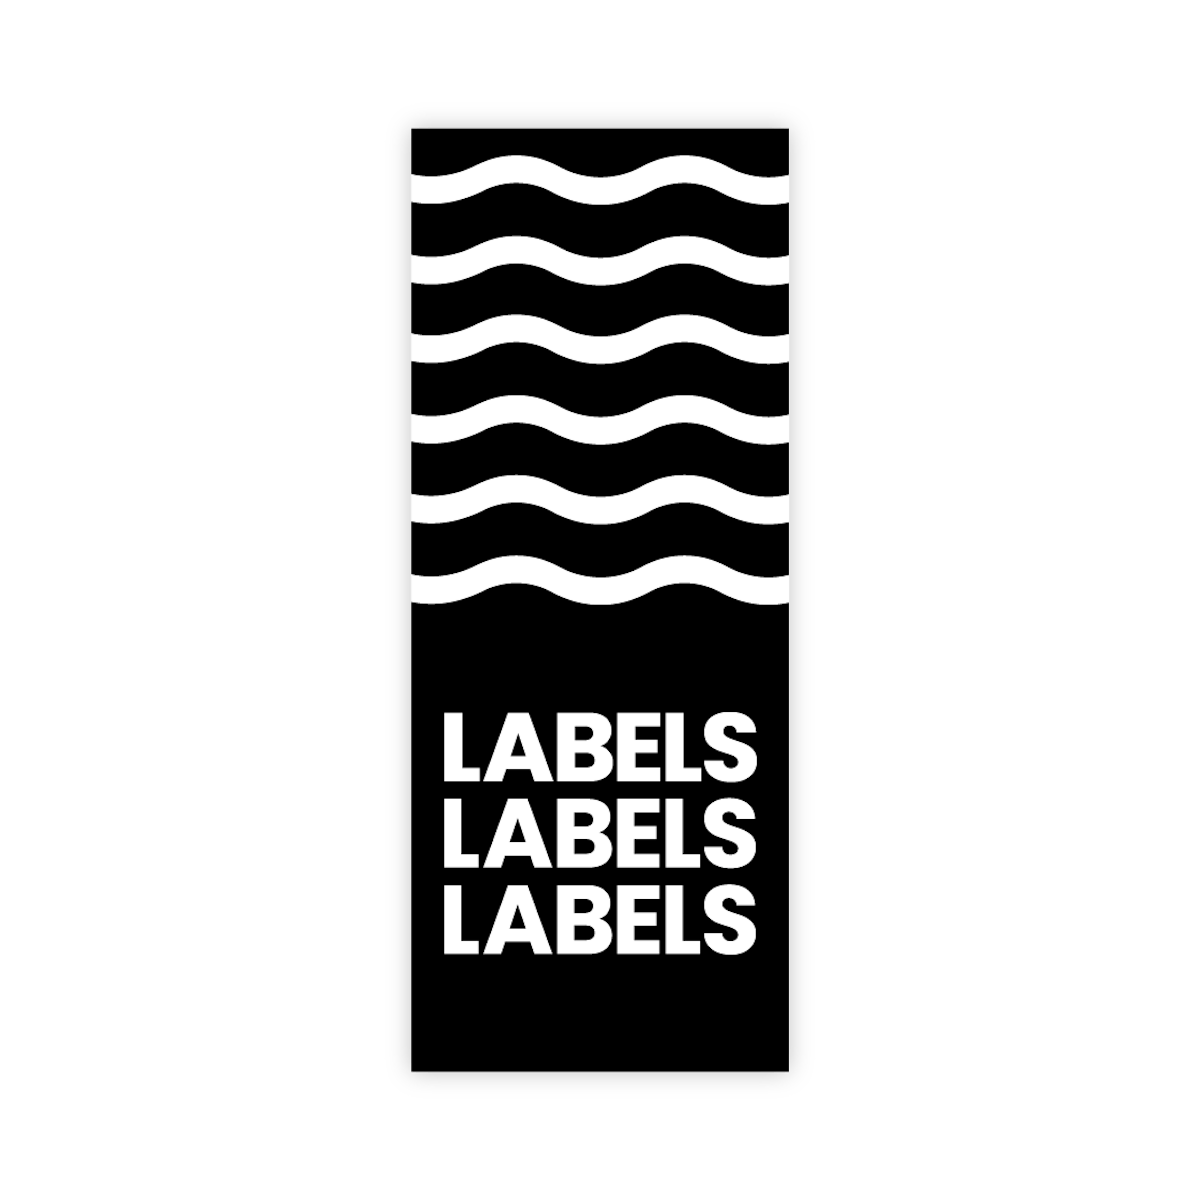  Labels x3 Etichetta da cucire con piega centrale orizzontale